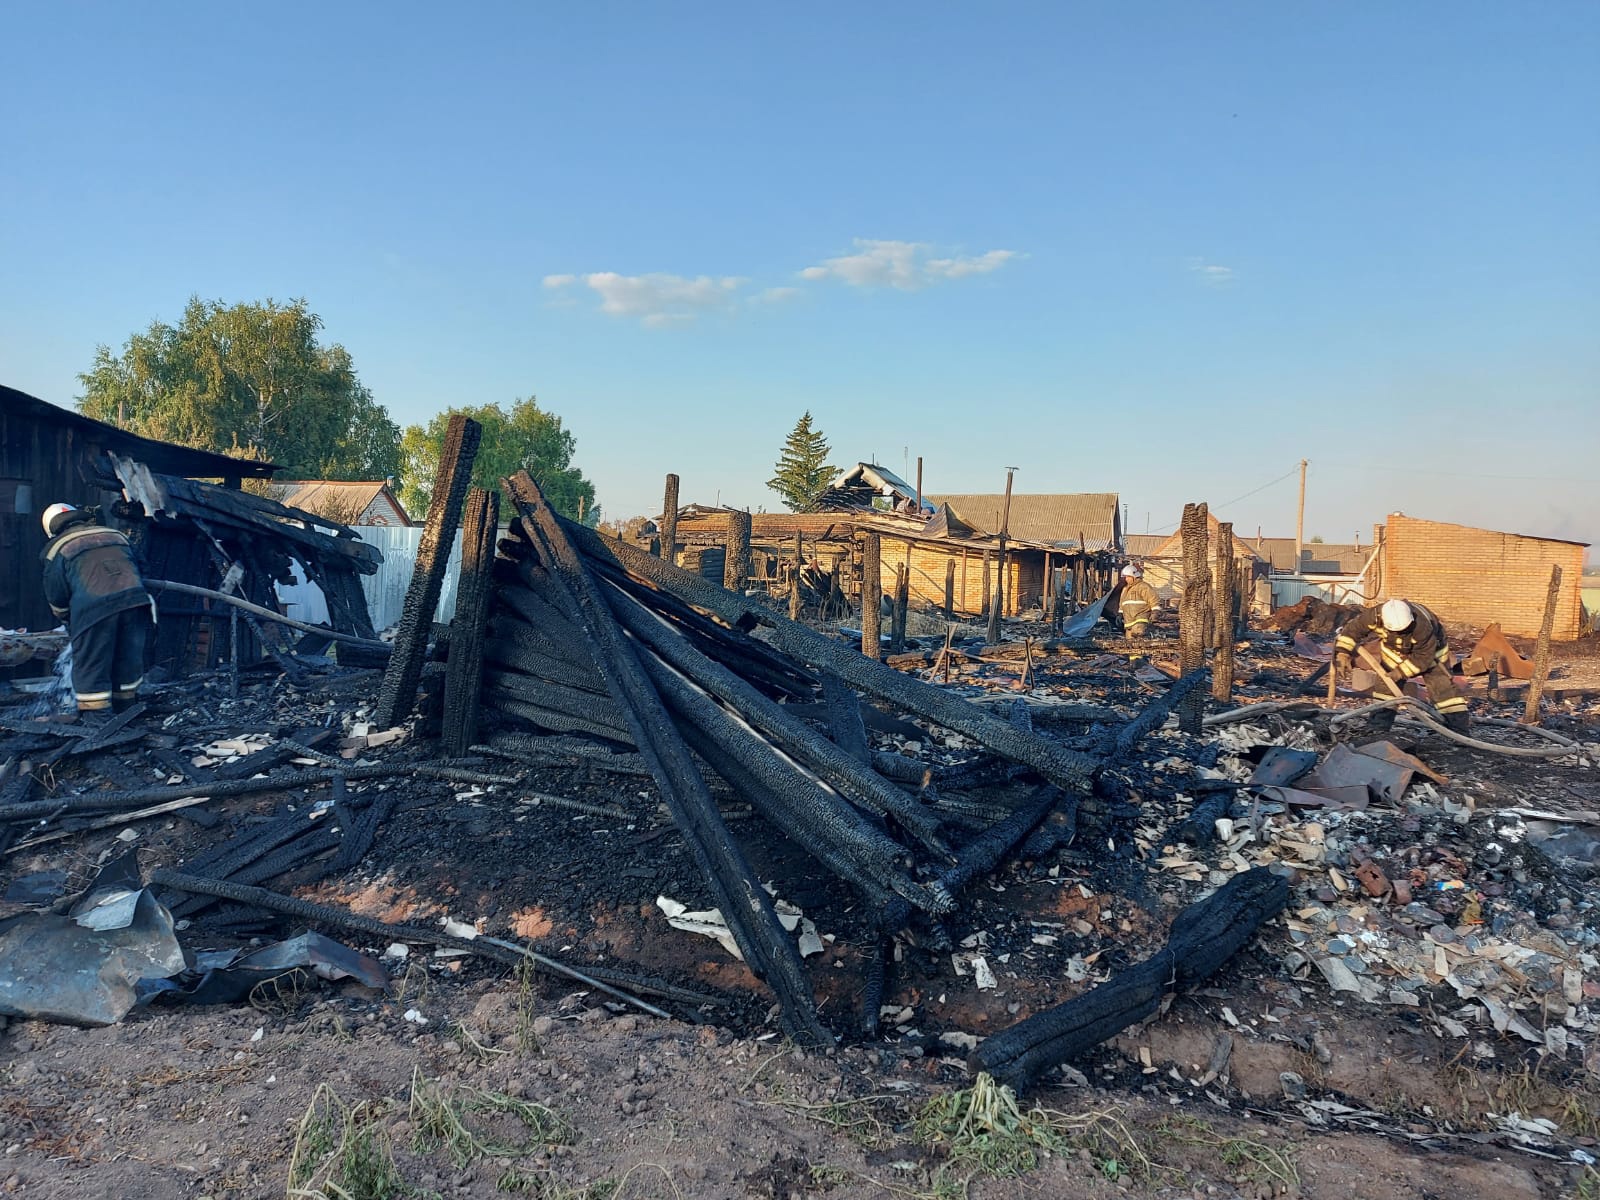 
		
		В поселке Сура Никольского района при пожаре погиб ребенок
		
	